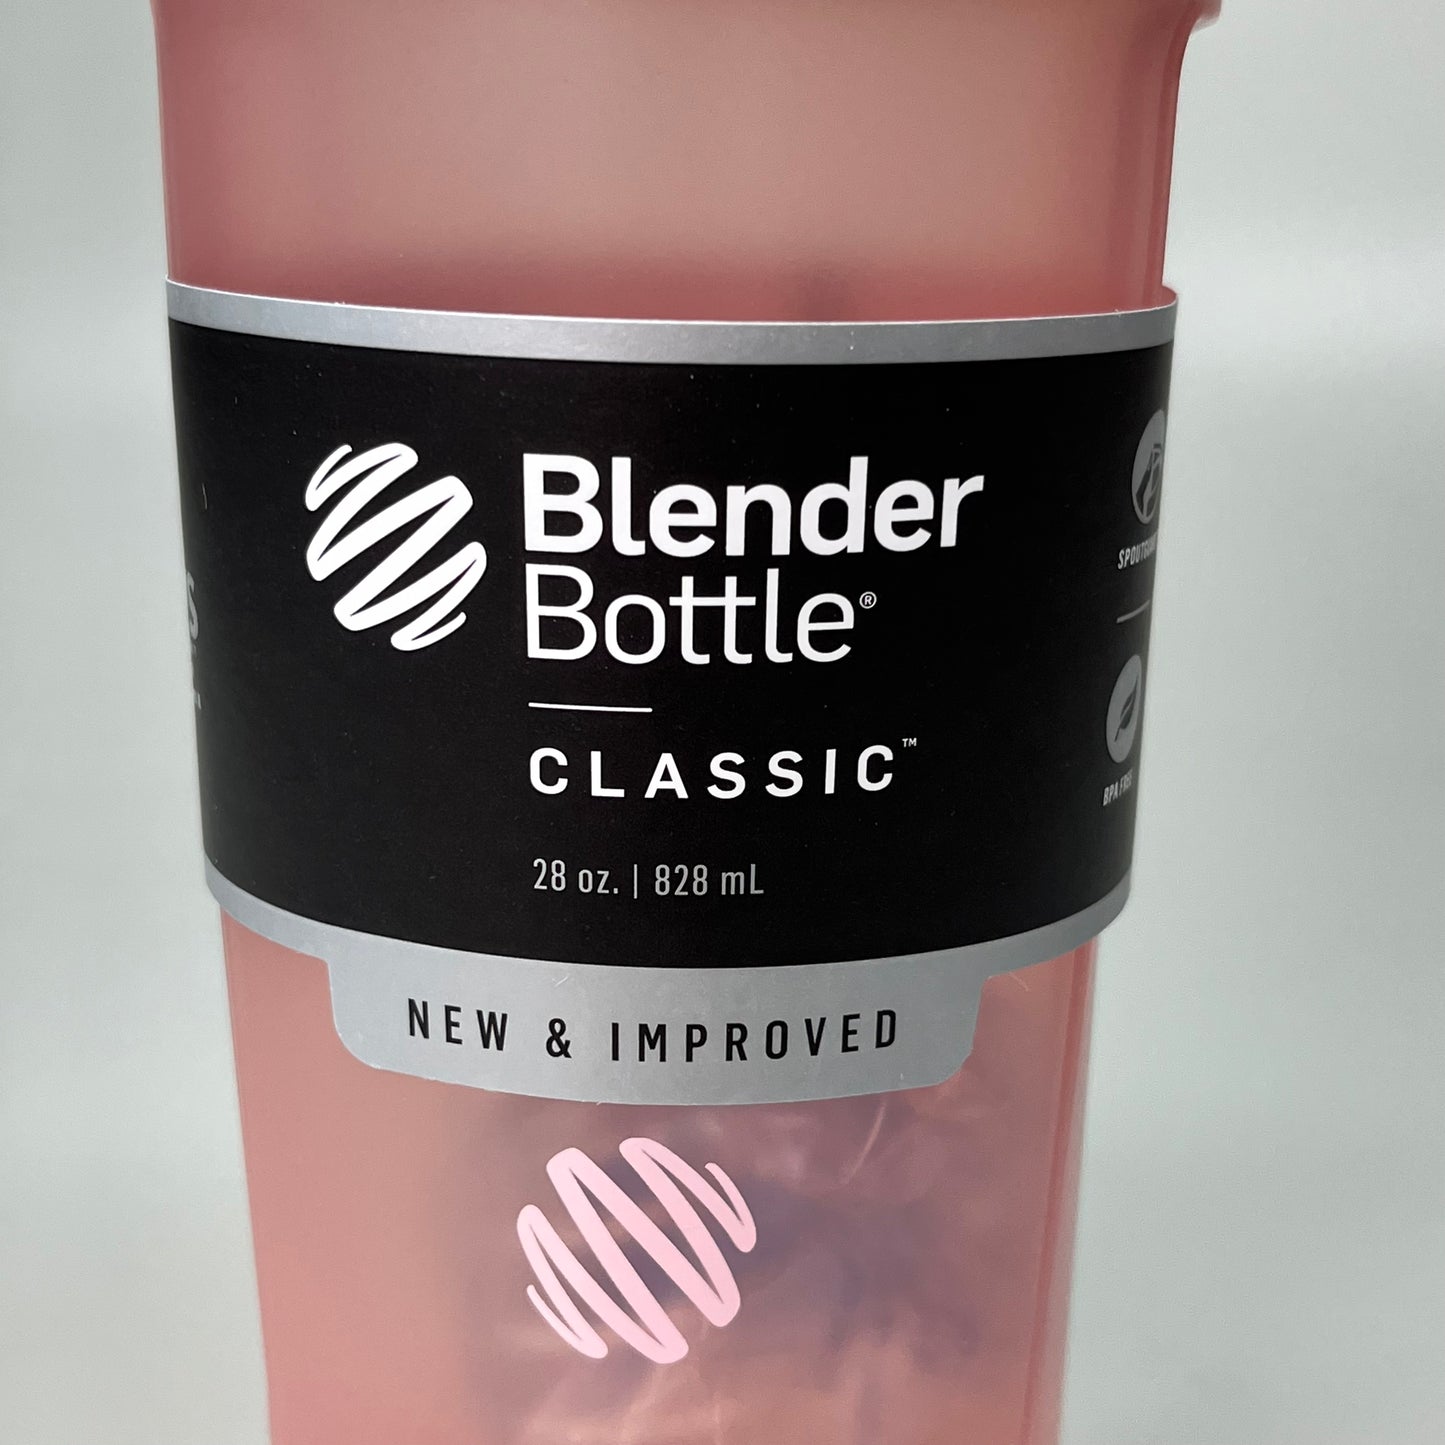 28oz Classic Blender Bottle